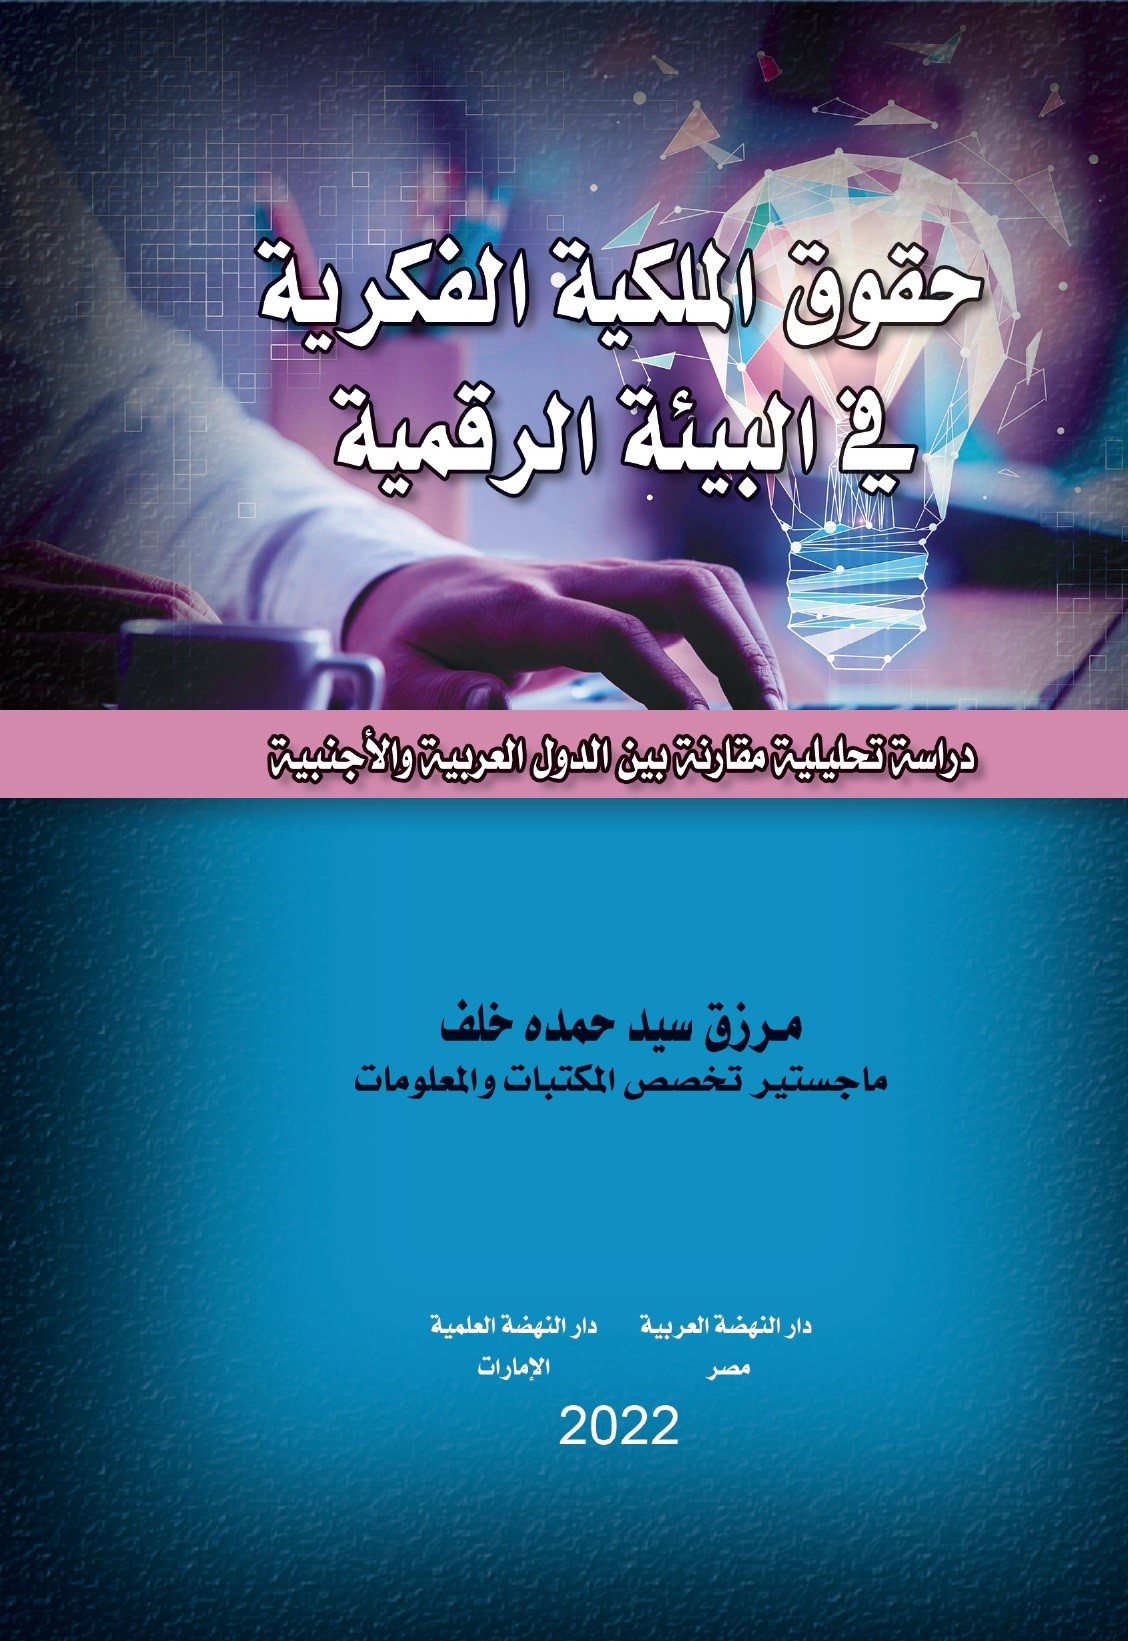 حقوق الملكية الفكرية في البيئة الرقمية - دراسة تحليلية مقارنة بين الدول العربية والأجنبية